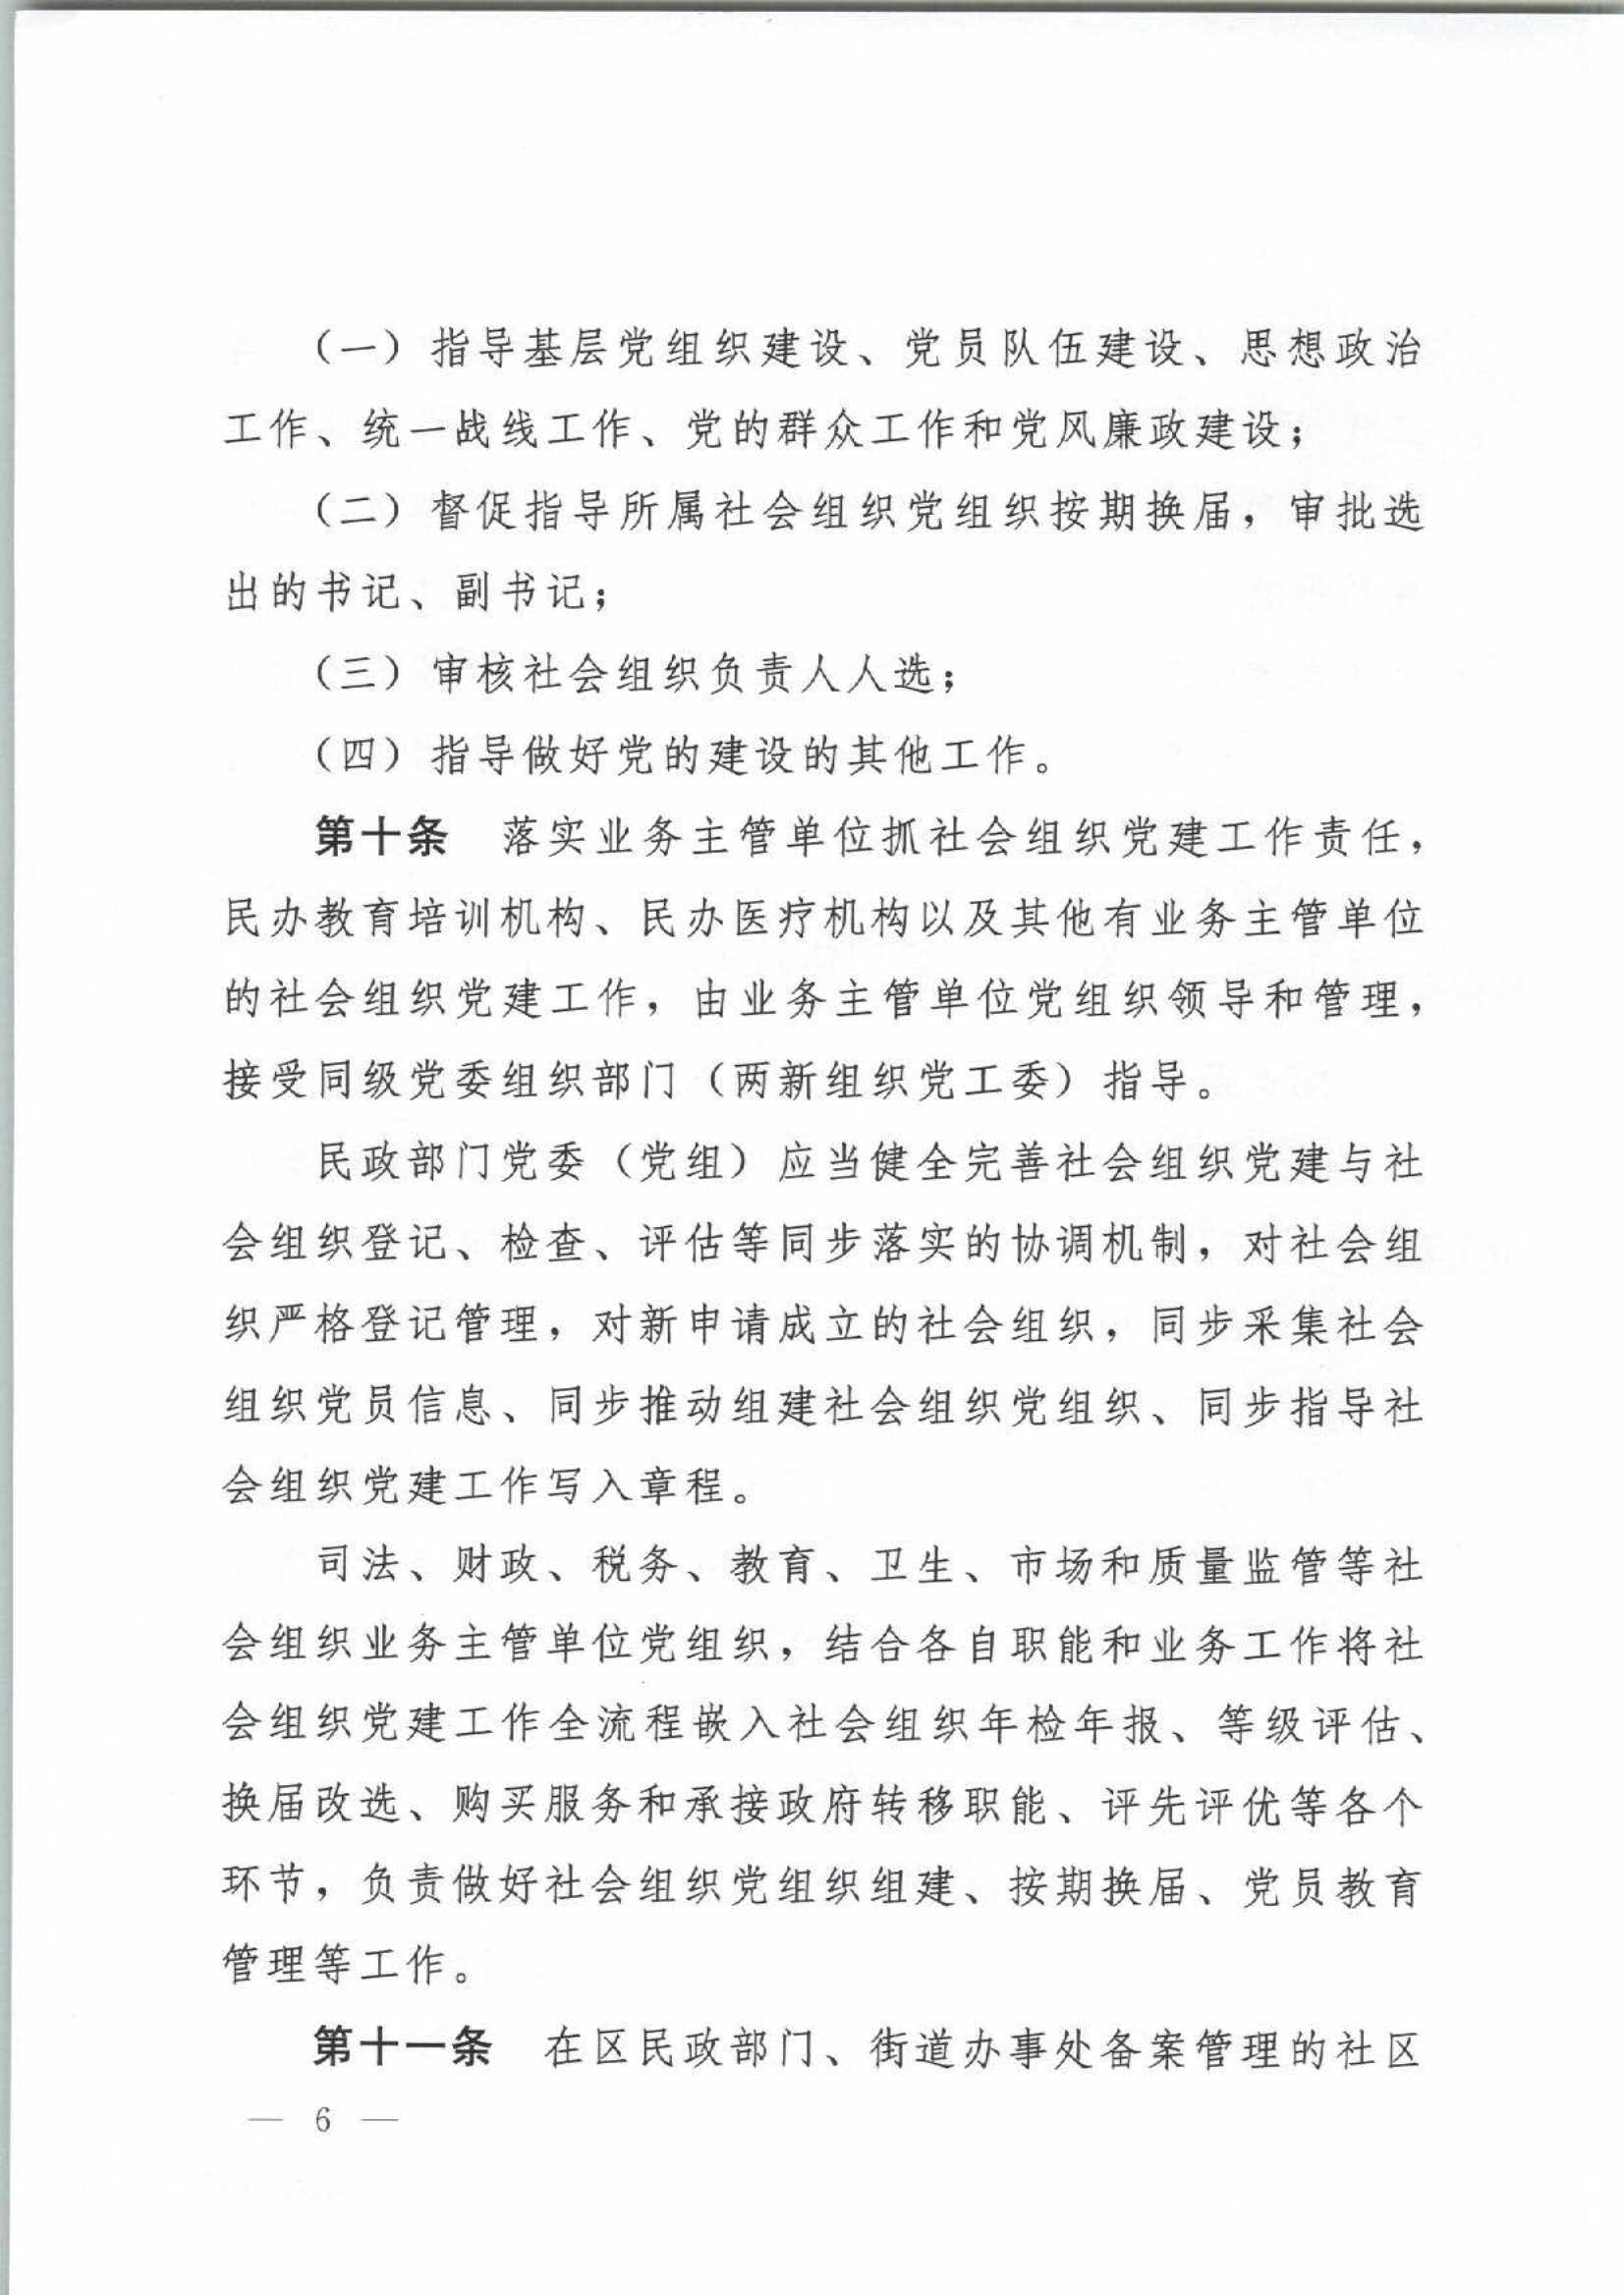 4.深圳市社会组织党的建设工作规定_6.Jpeg